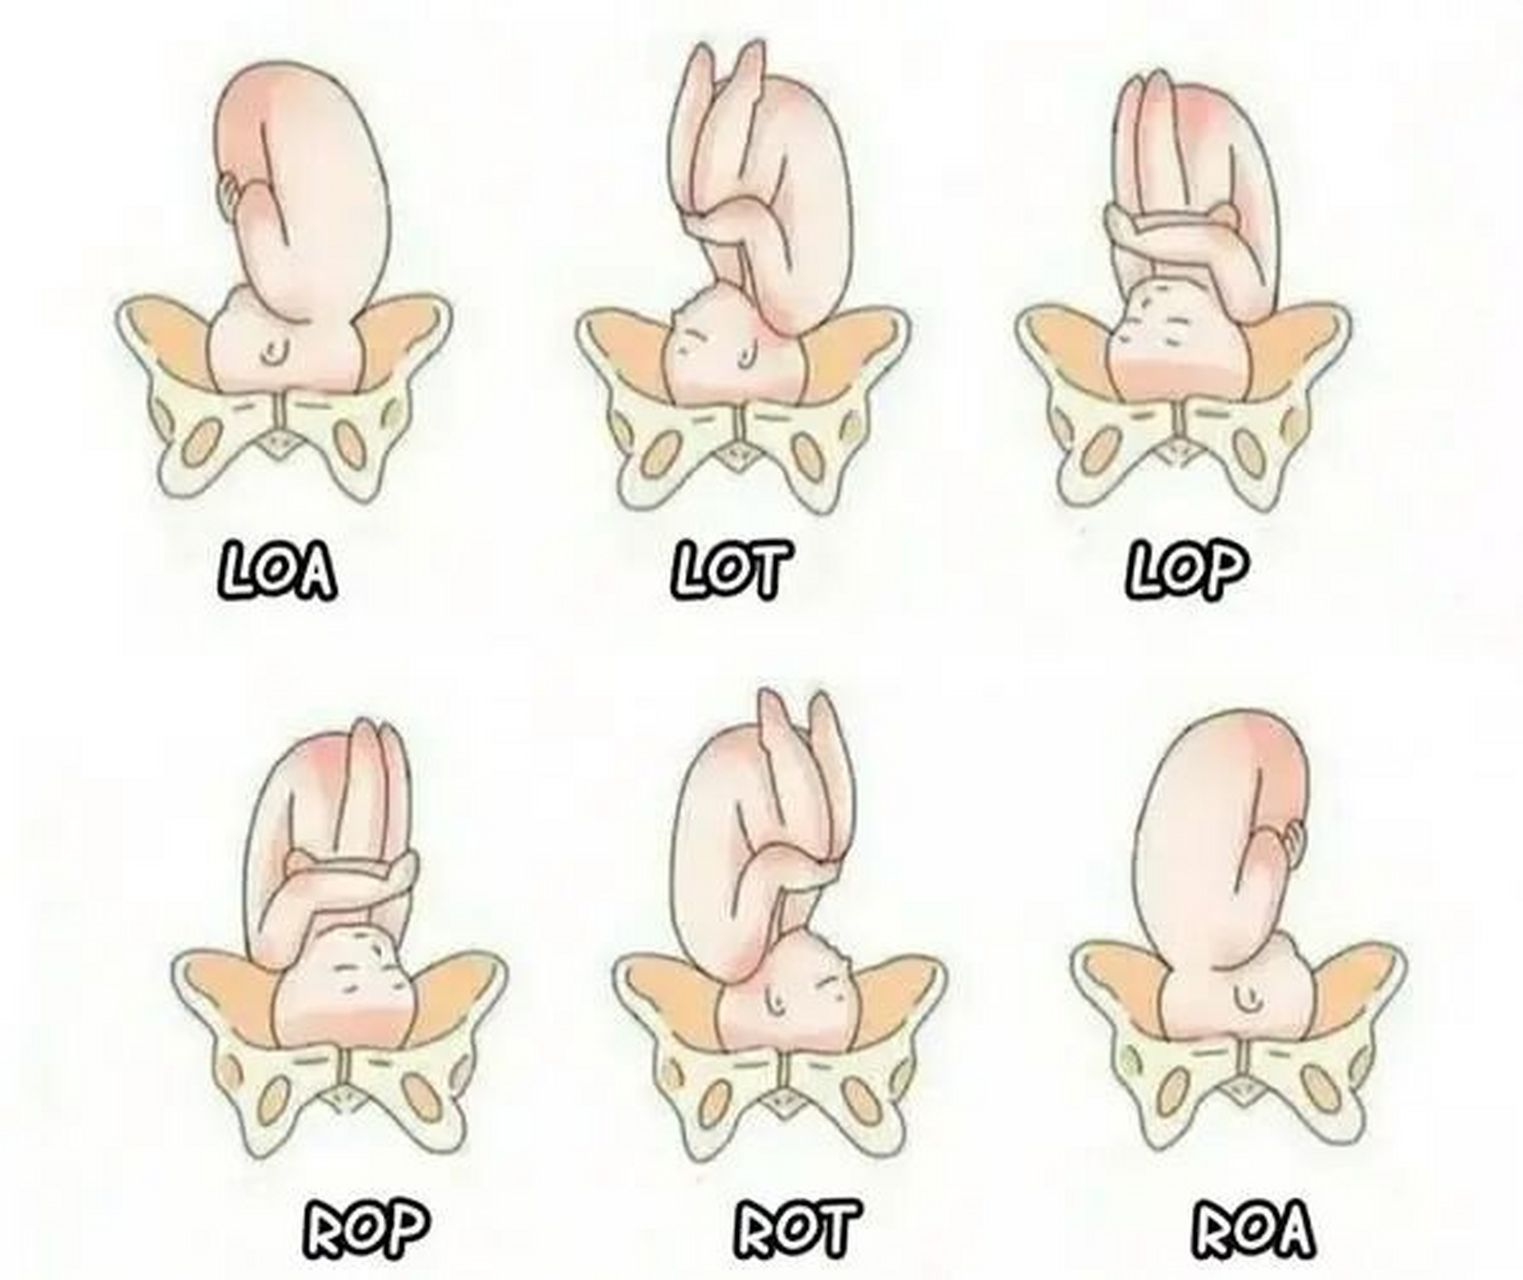 一图看懂胎方位 胎方位是指先露部的指示点与产妇骨盆的关系